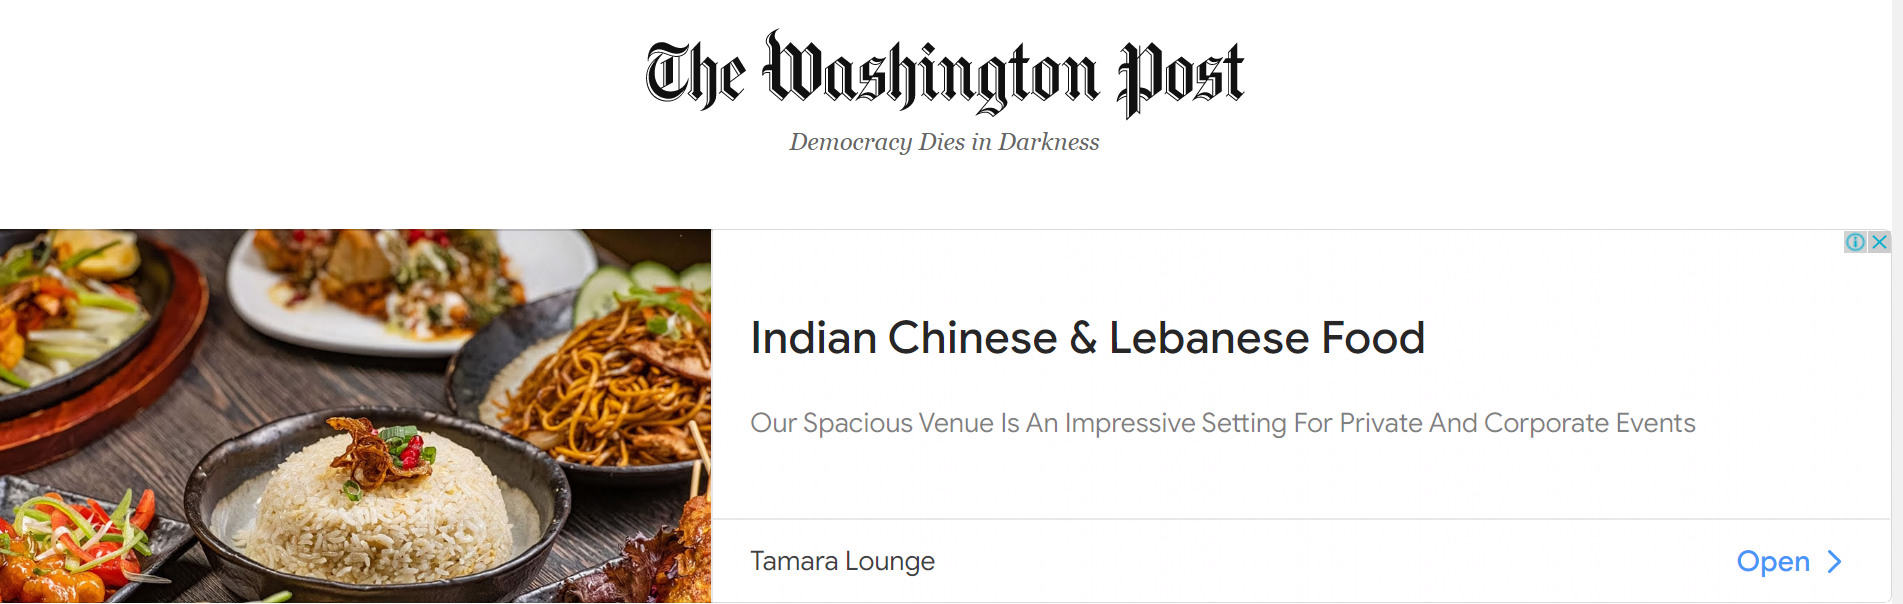 Retargeting example - Tamara Lounge in The Washington Post